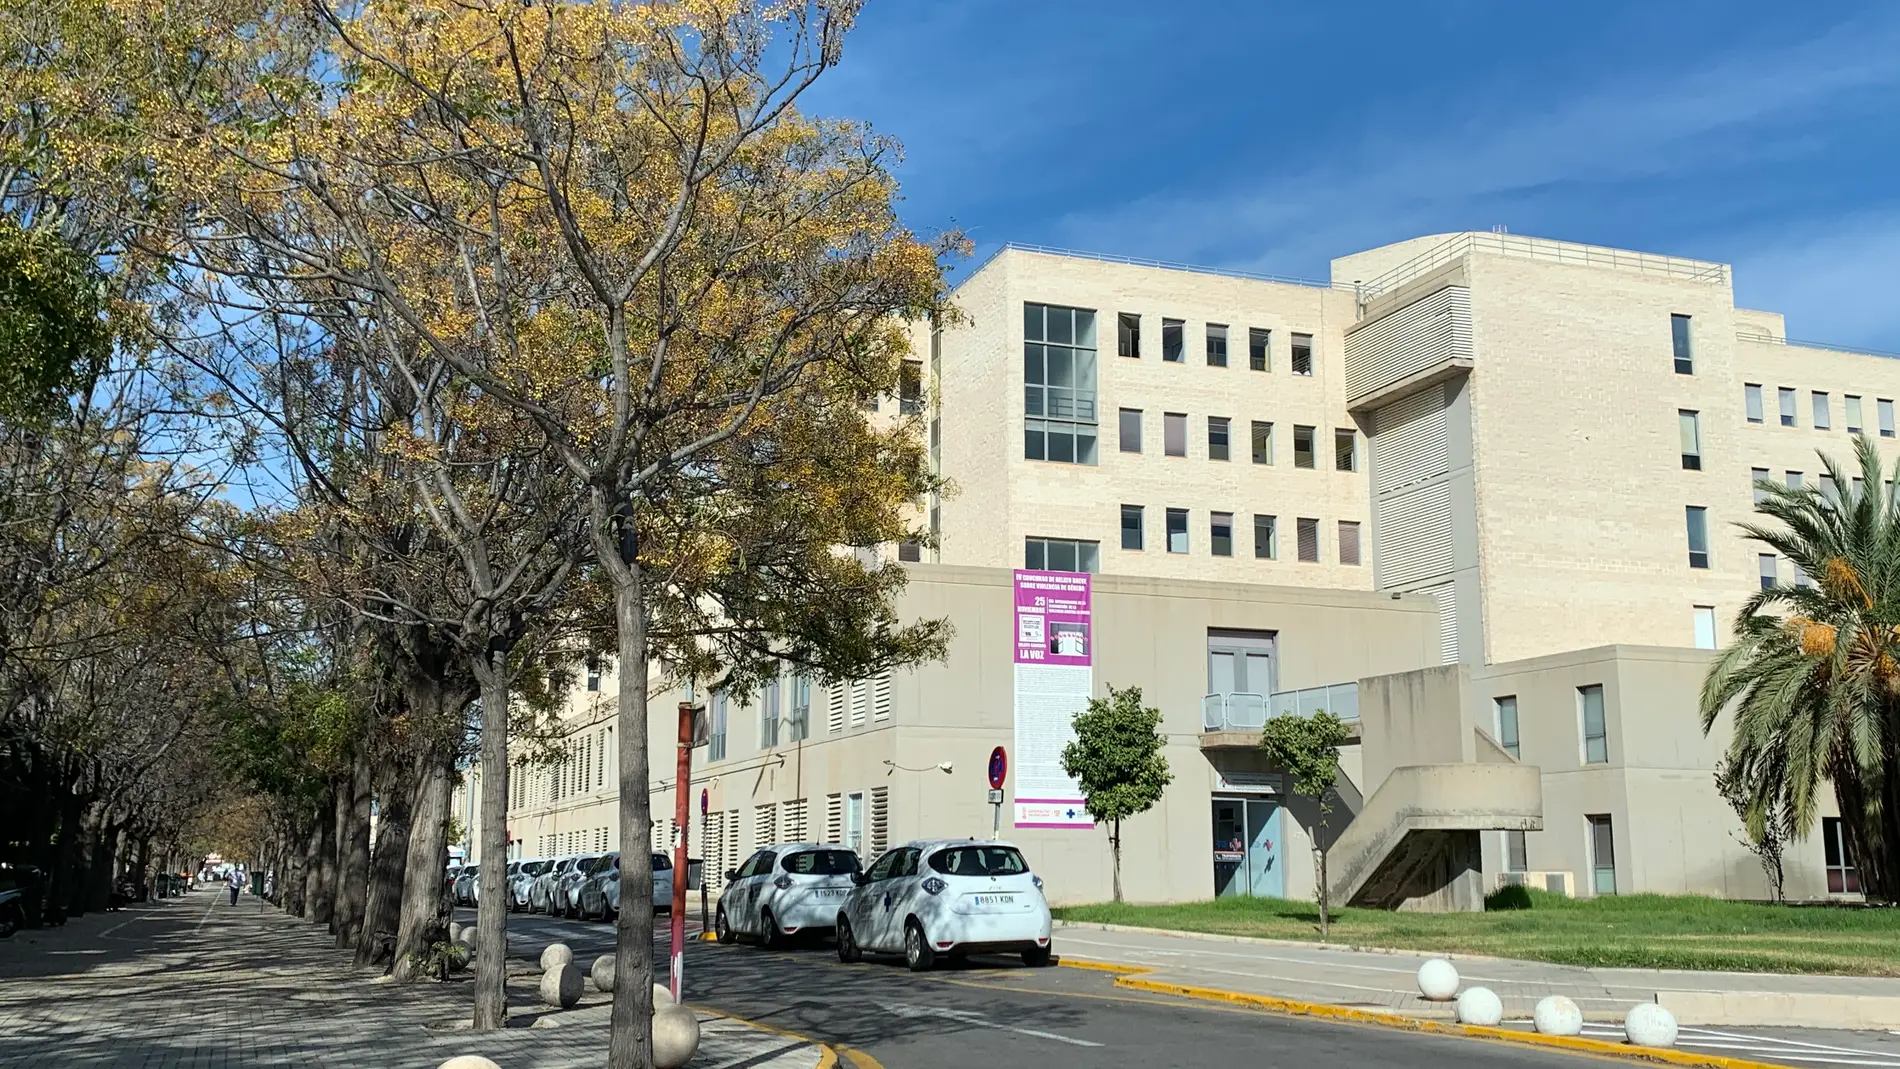 Hospital de San Juan